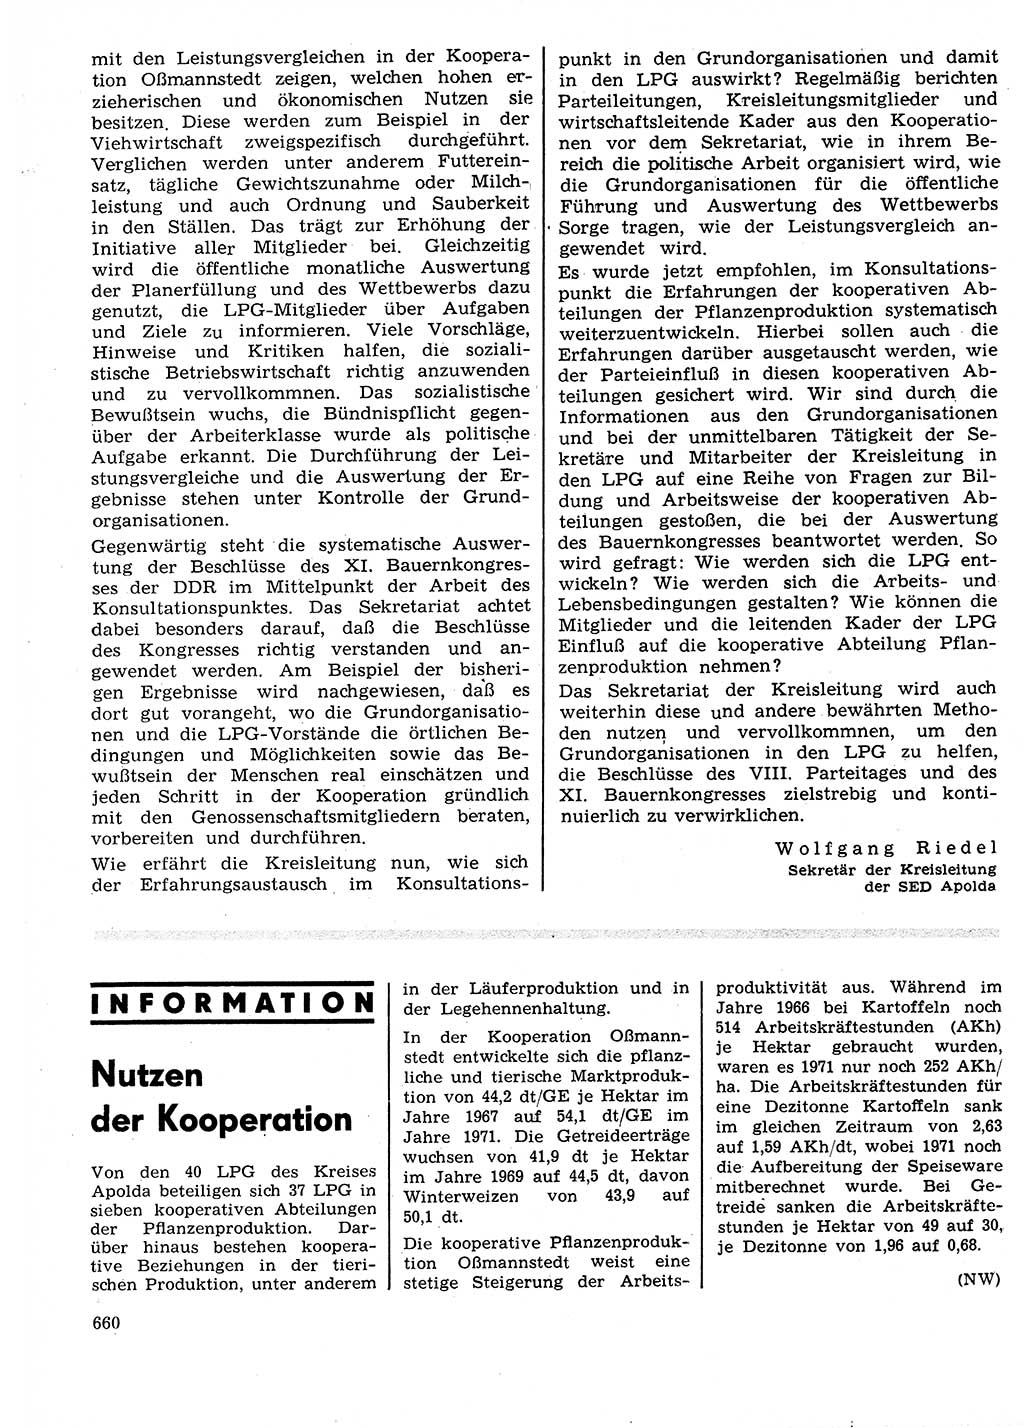 Neuer Weg (NW), Organ des Zentralkomitees (ZK) der SED (Sozialistische Einheitspartei Deutschlands) für Fragen des Parteilebens, 27. Jahrgang [Deutsche Demokratische Republik (DDR)] 1972, Seite 660 (NW ZK SED DDR 1972, S. 660)